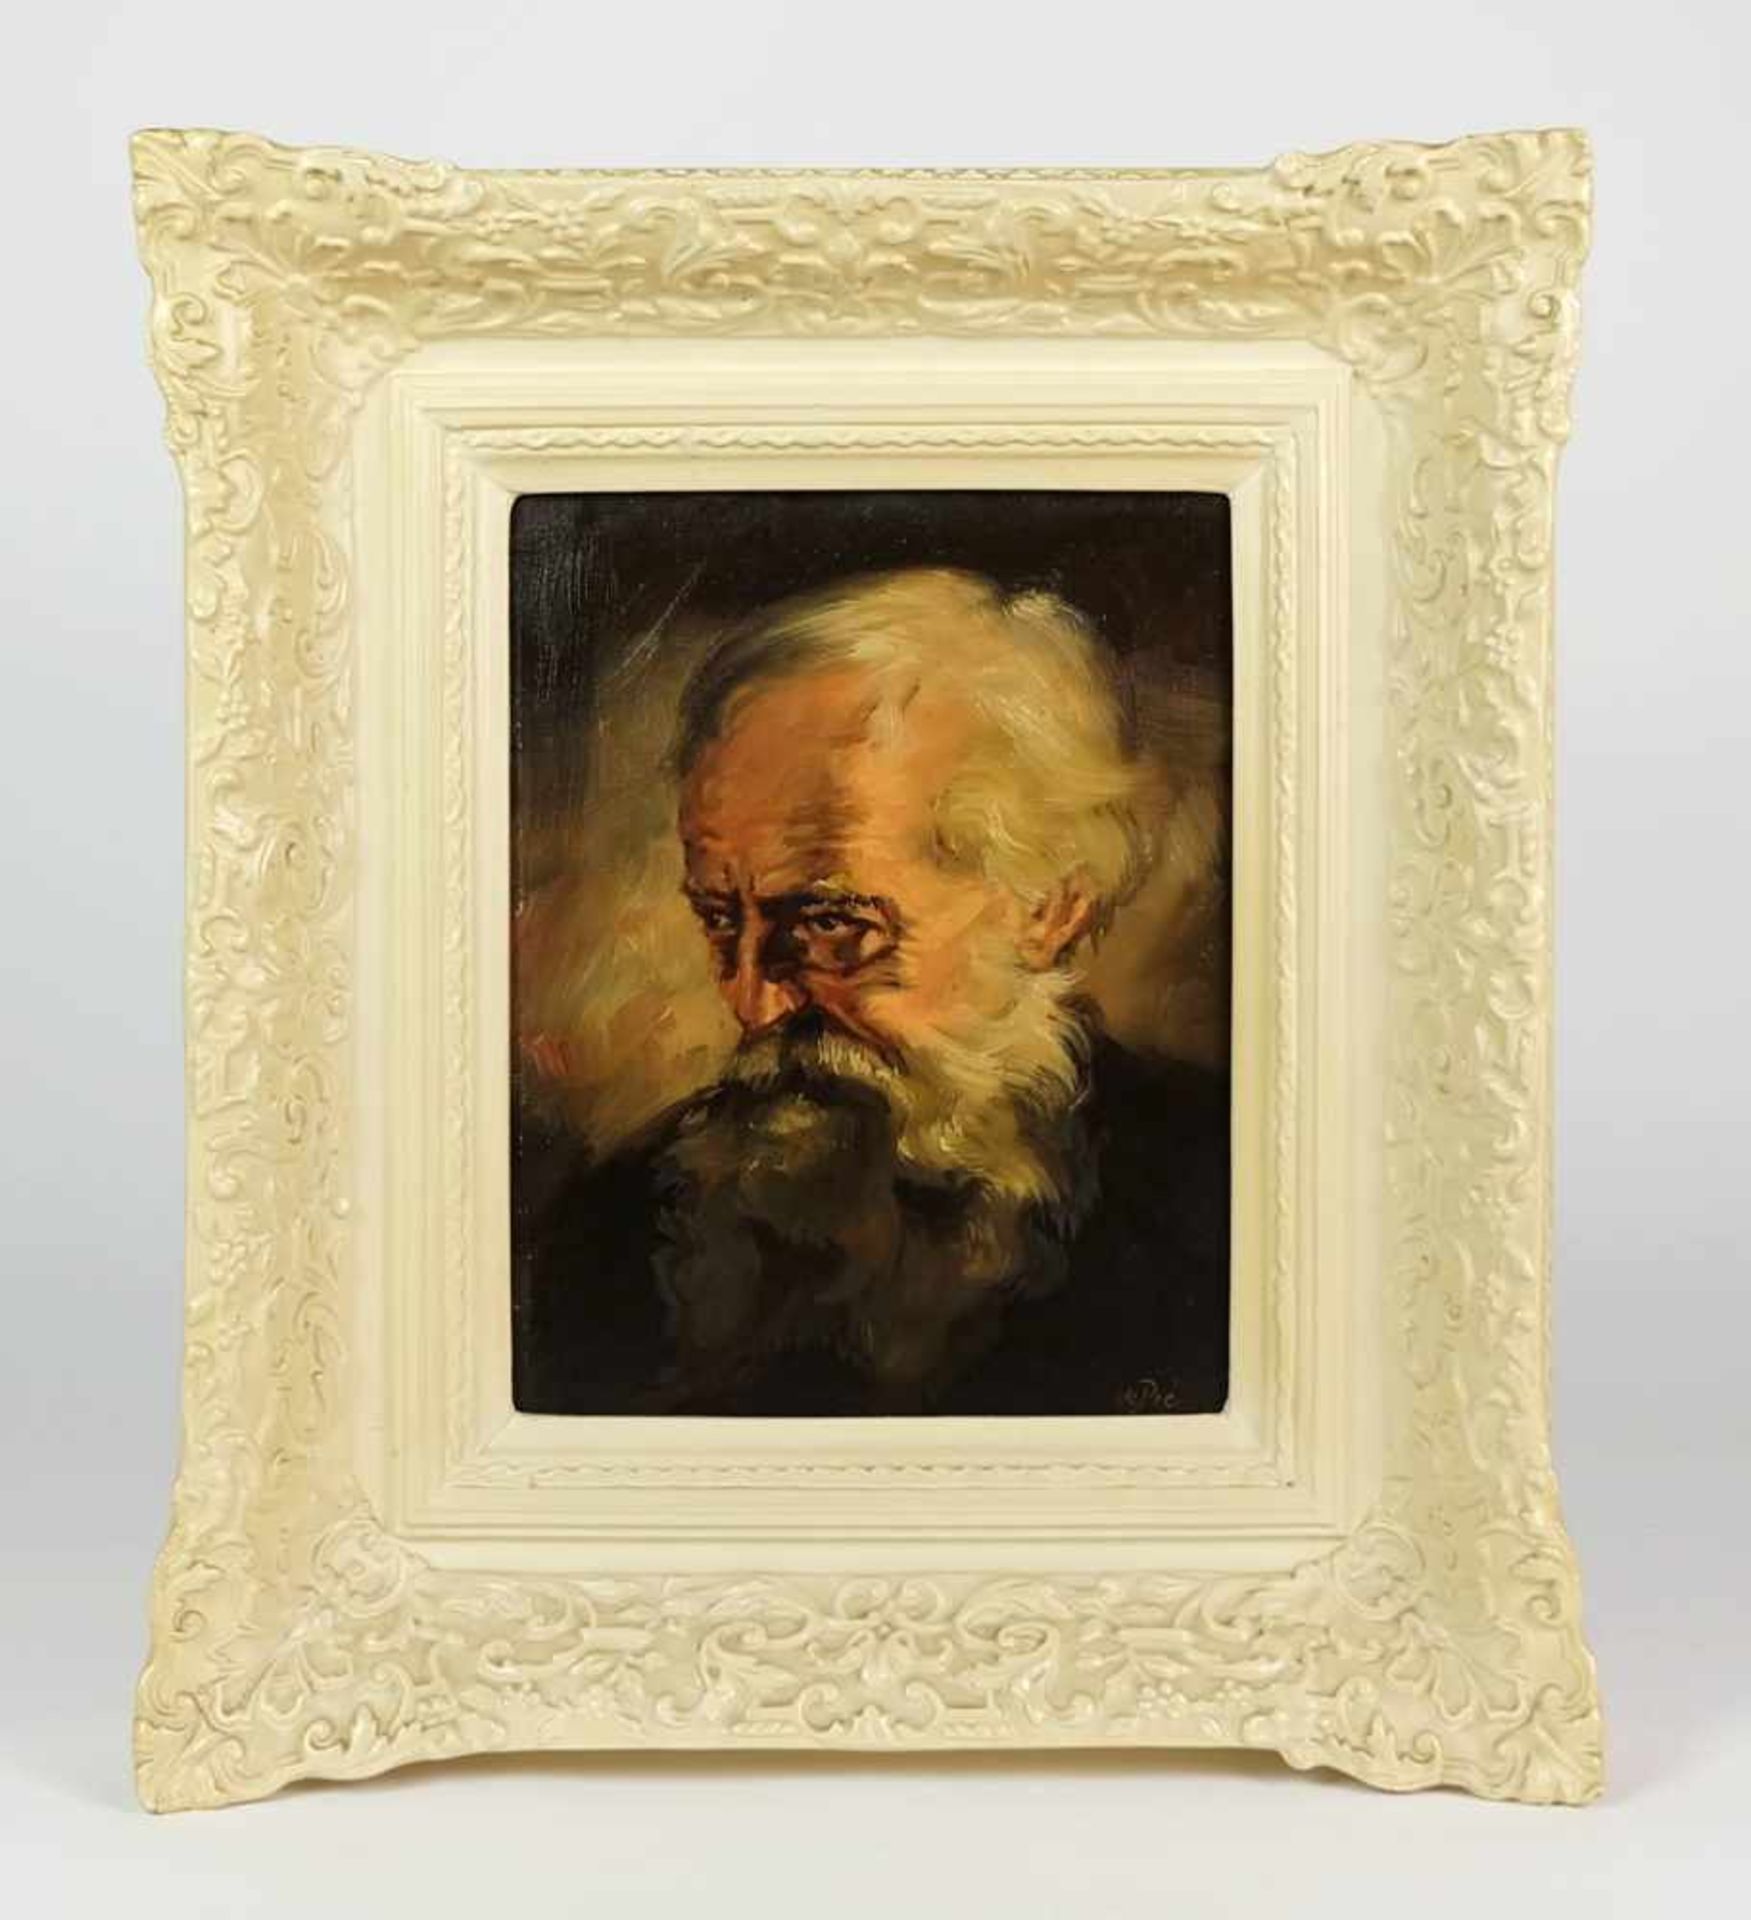 DEPRÉ, Willi (*1922 †1995), Öl/ Lw., Porträt eines alten Mannes, rechts unten sign., 30 x 24 cm,